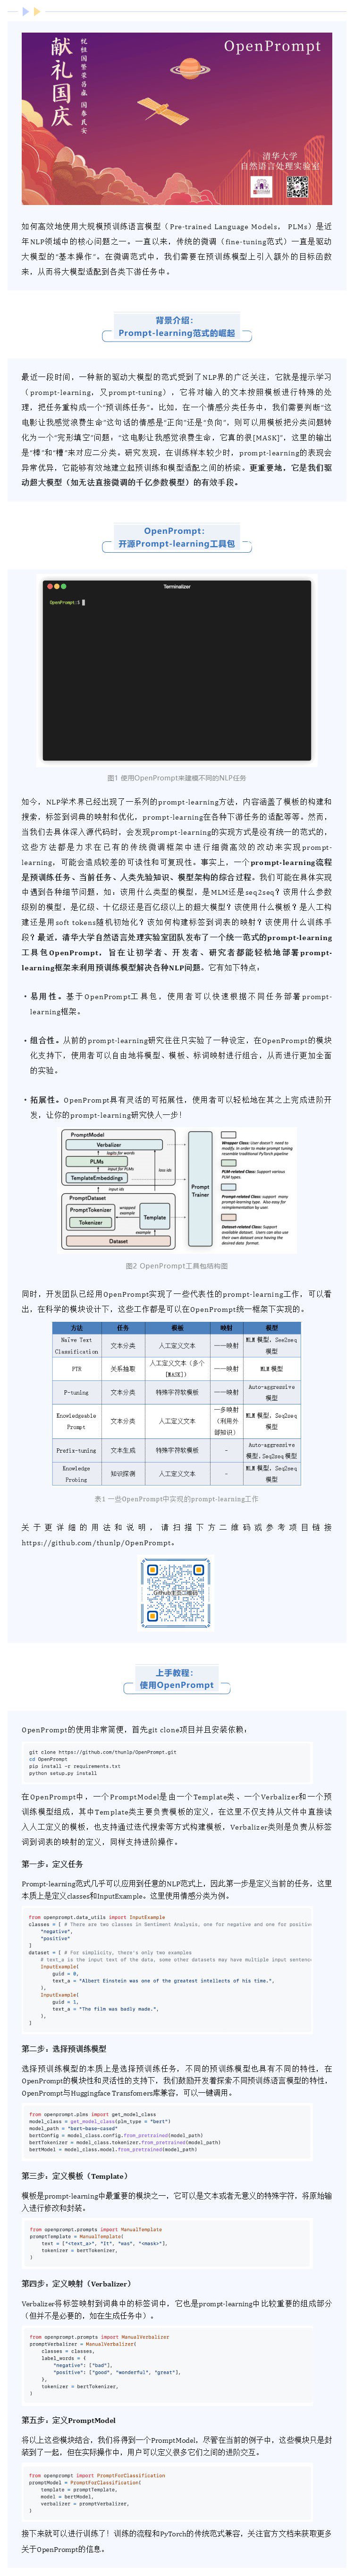 献礼国庆 _ 清华NLP实验室推出OpenPrompt开源工具包_壹伴长图11.jpg